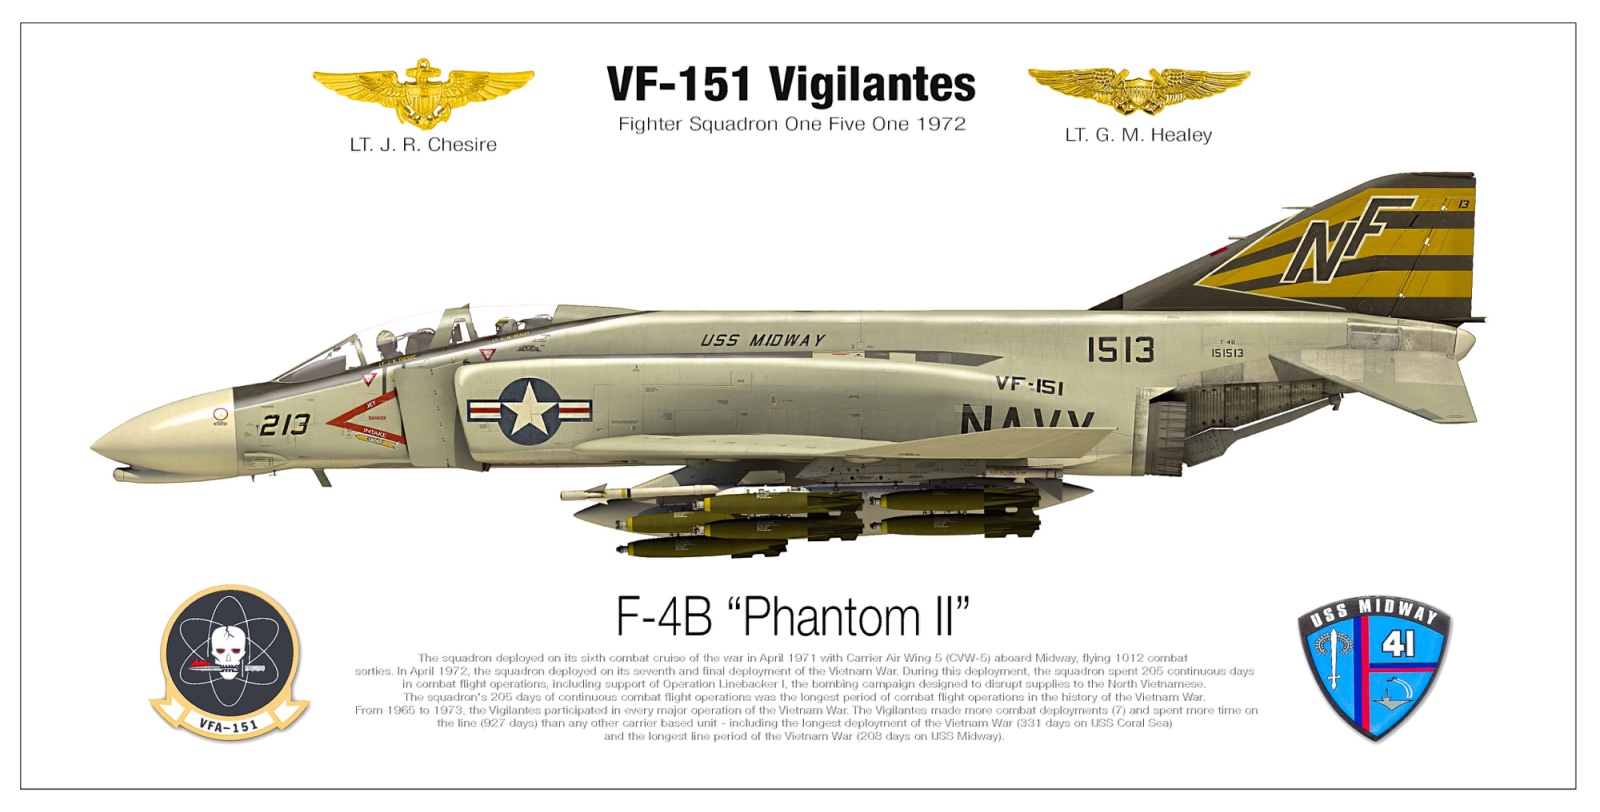 McDonnell Douglas F-4 Phantom IIN (interceptor y cazabombardero supersónico, biplaza, bimotor y de largo alcance USA) - Página 3 Nf-213